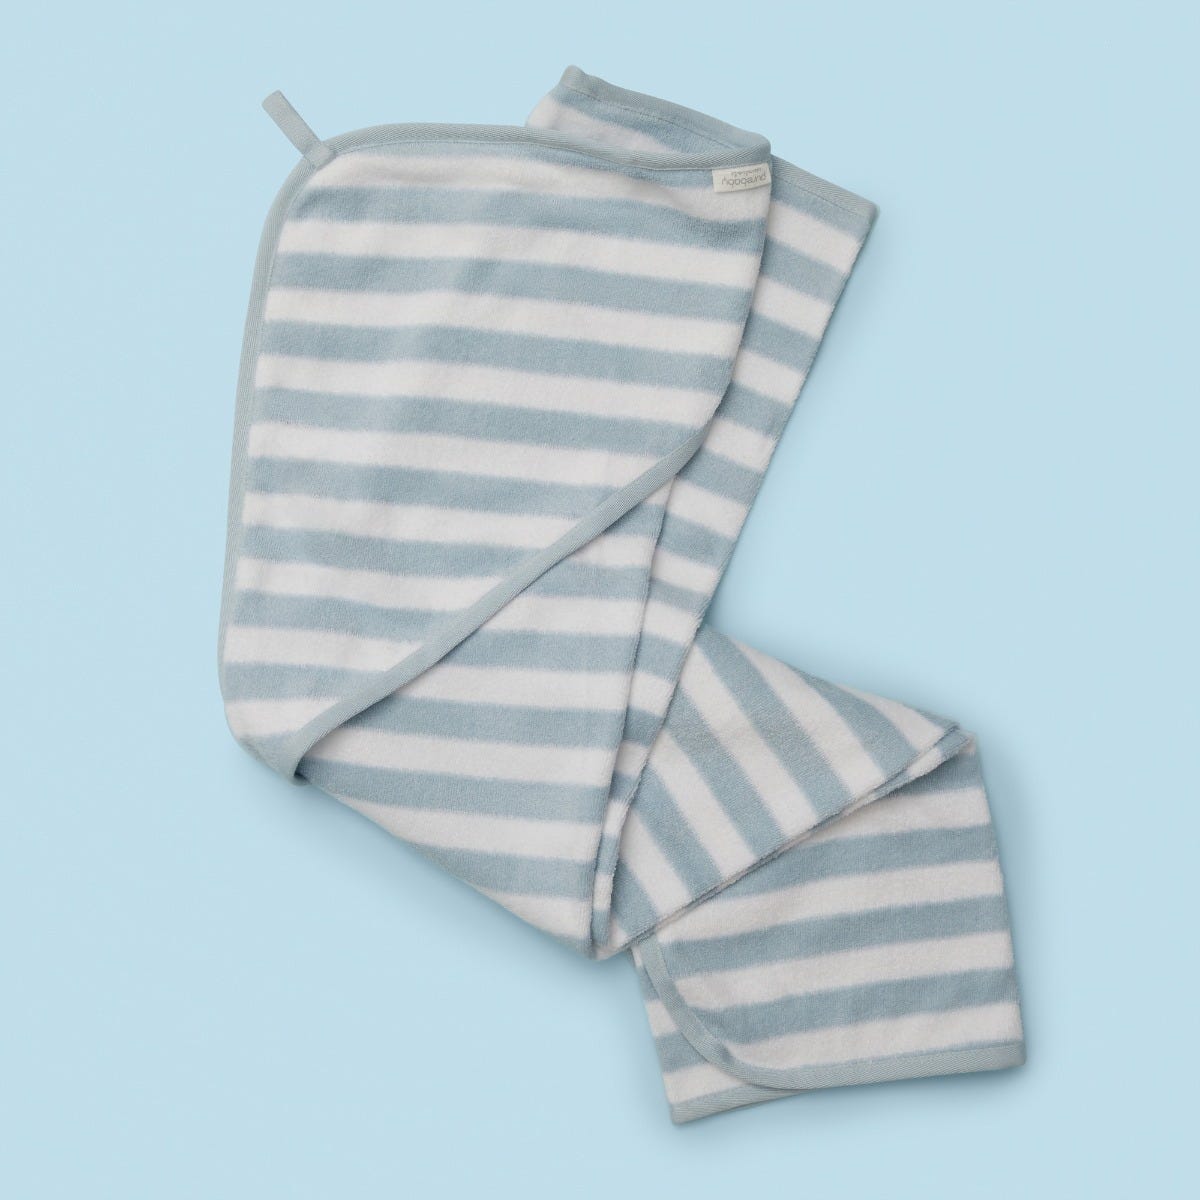 Purebaby Hooded Towel in Pale Blue Stripe